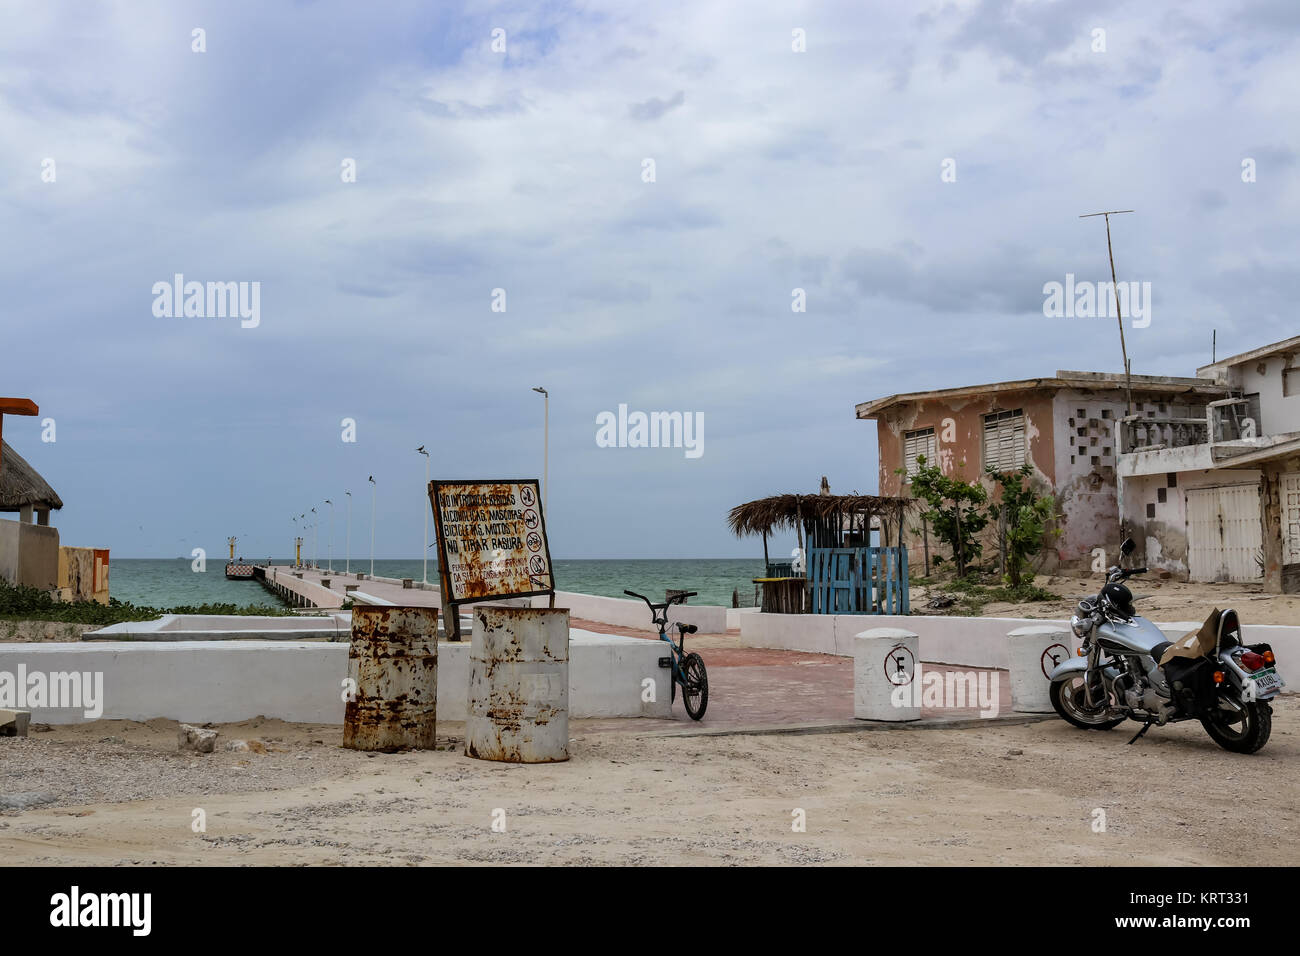 Ein Fahrrad- und ein Motorrad in der Nähe von einem Pier und alte Wetter geschlagen Häuser in der Nähe von Progesso Yucatan Mexiko 7 - 06 - 2017 geparkt Stockfoto